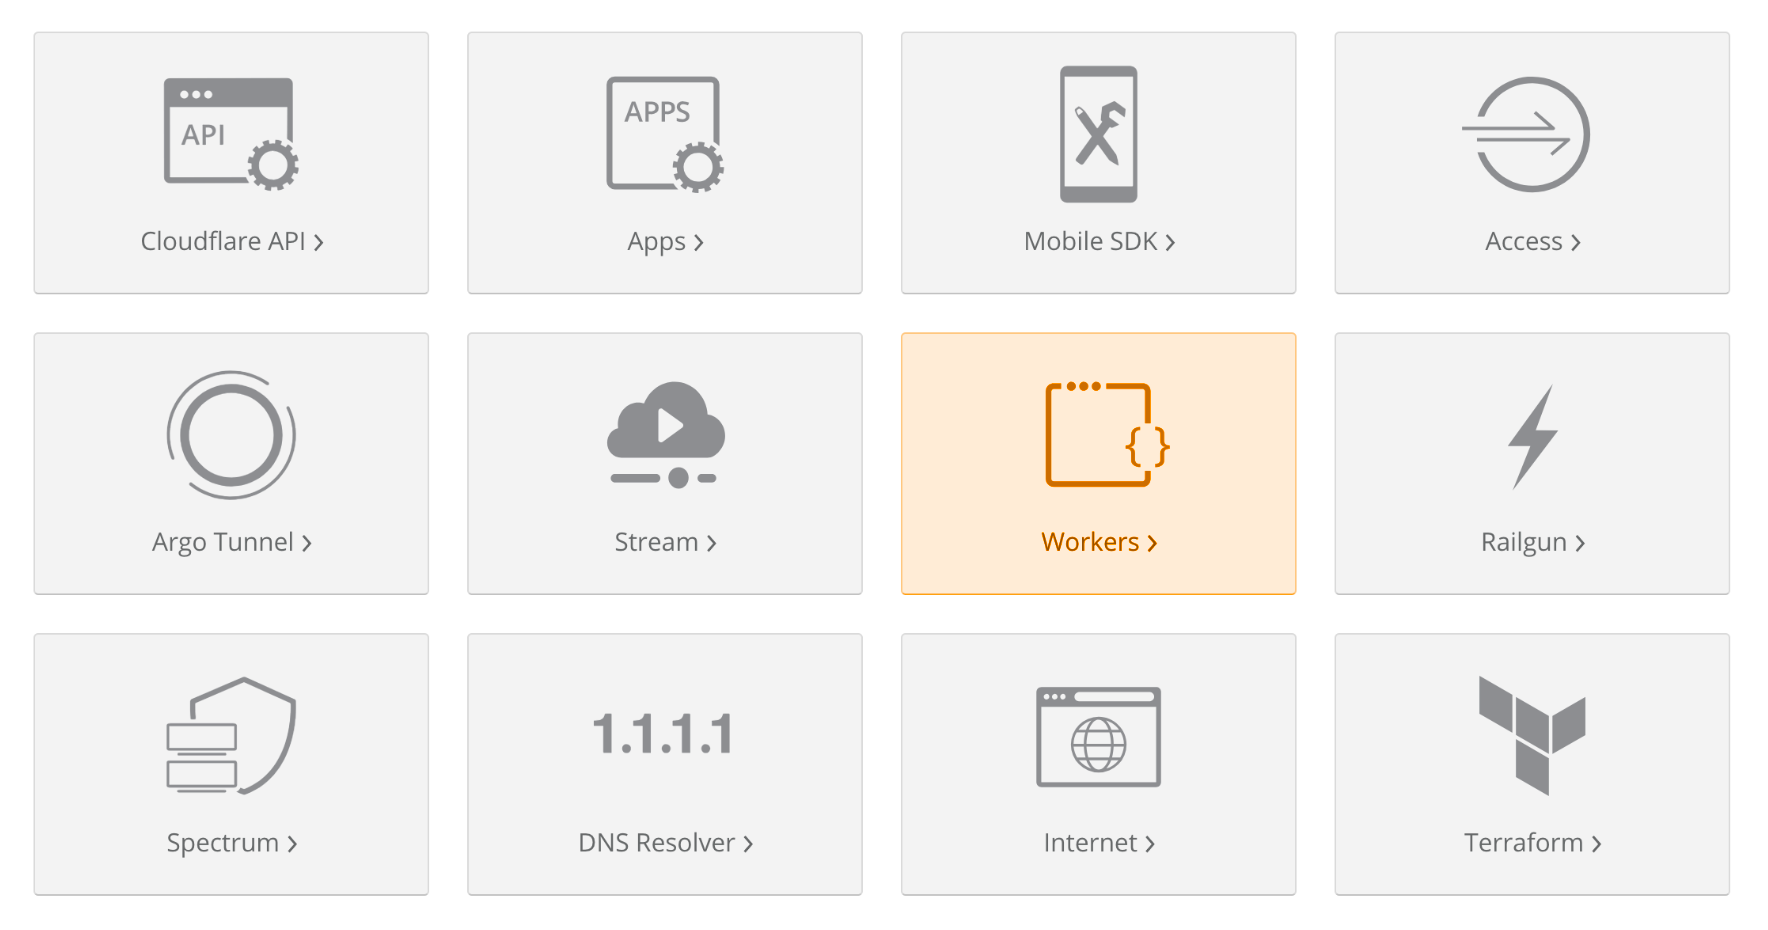 Cloudflare's Developer Platform